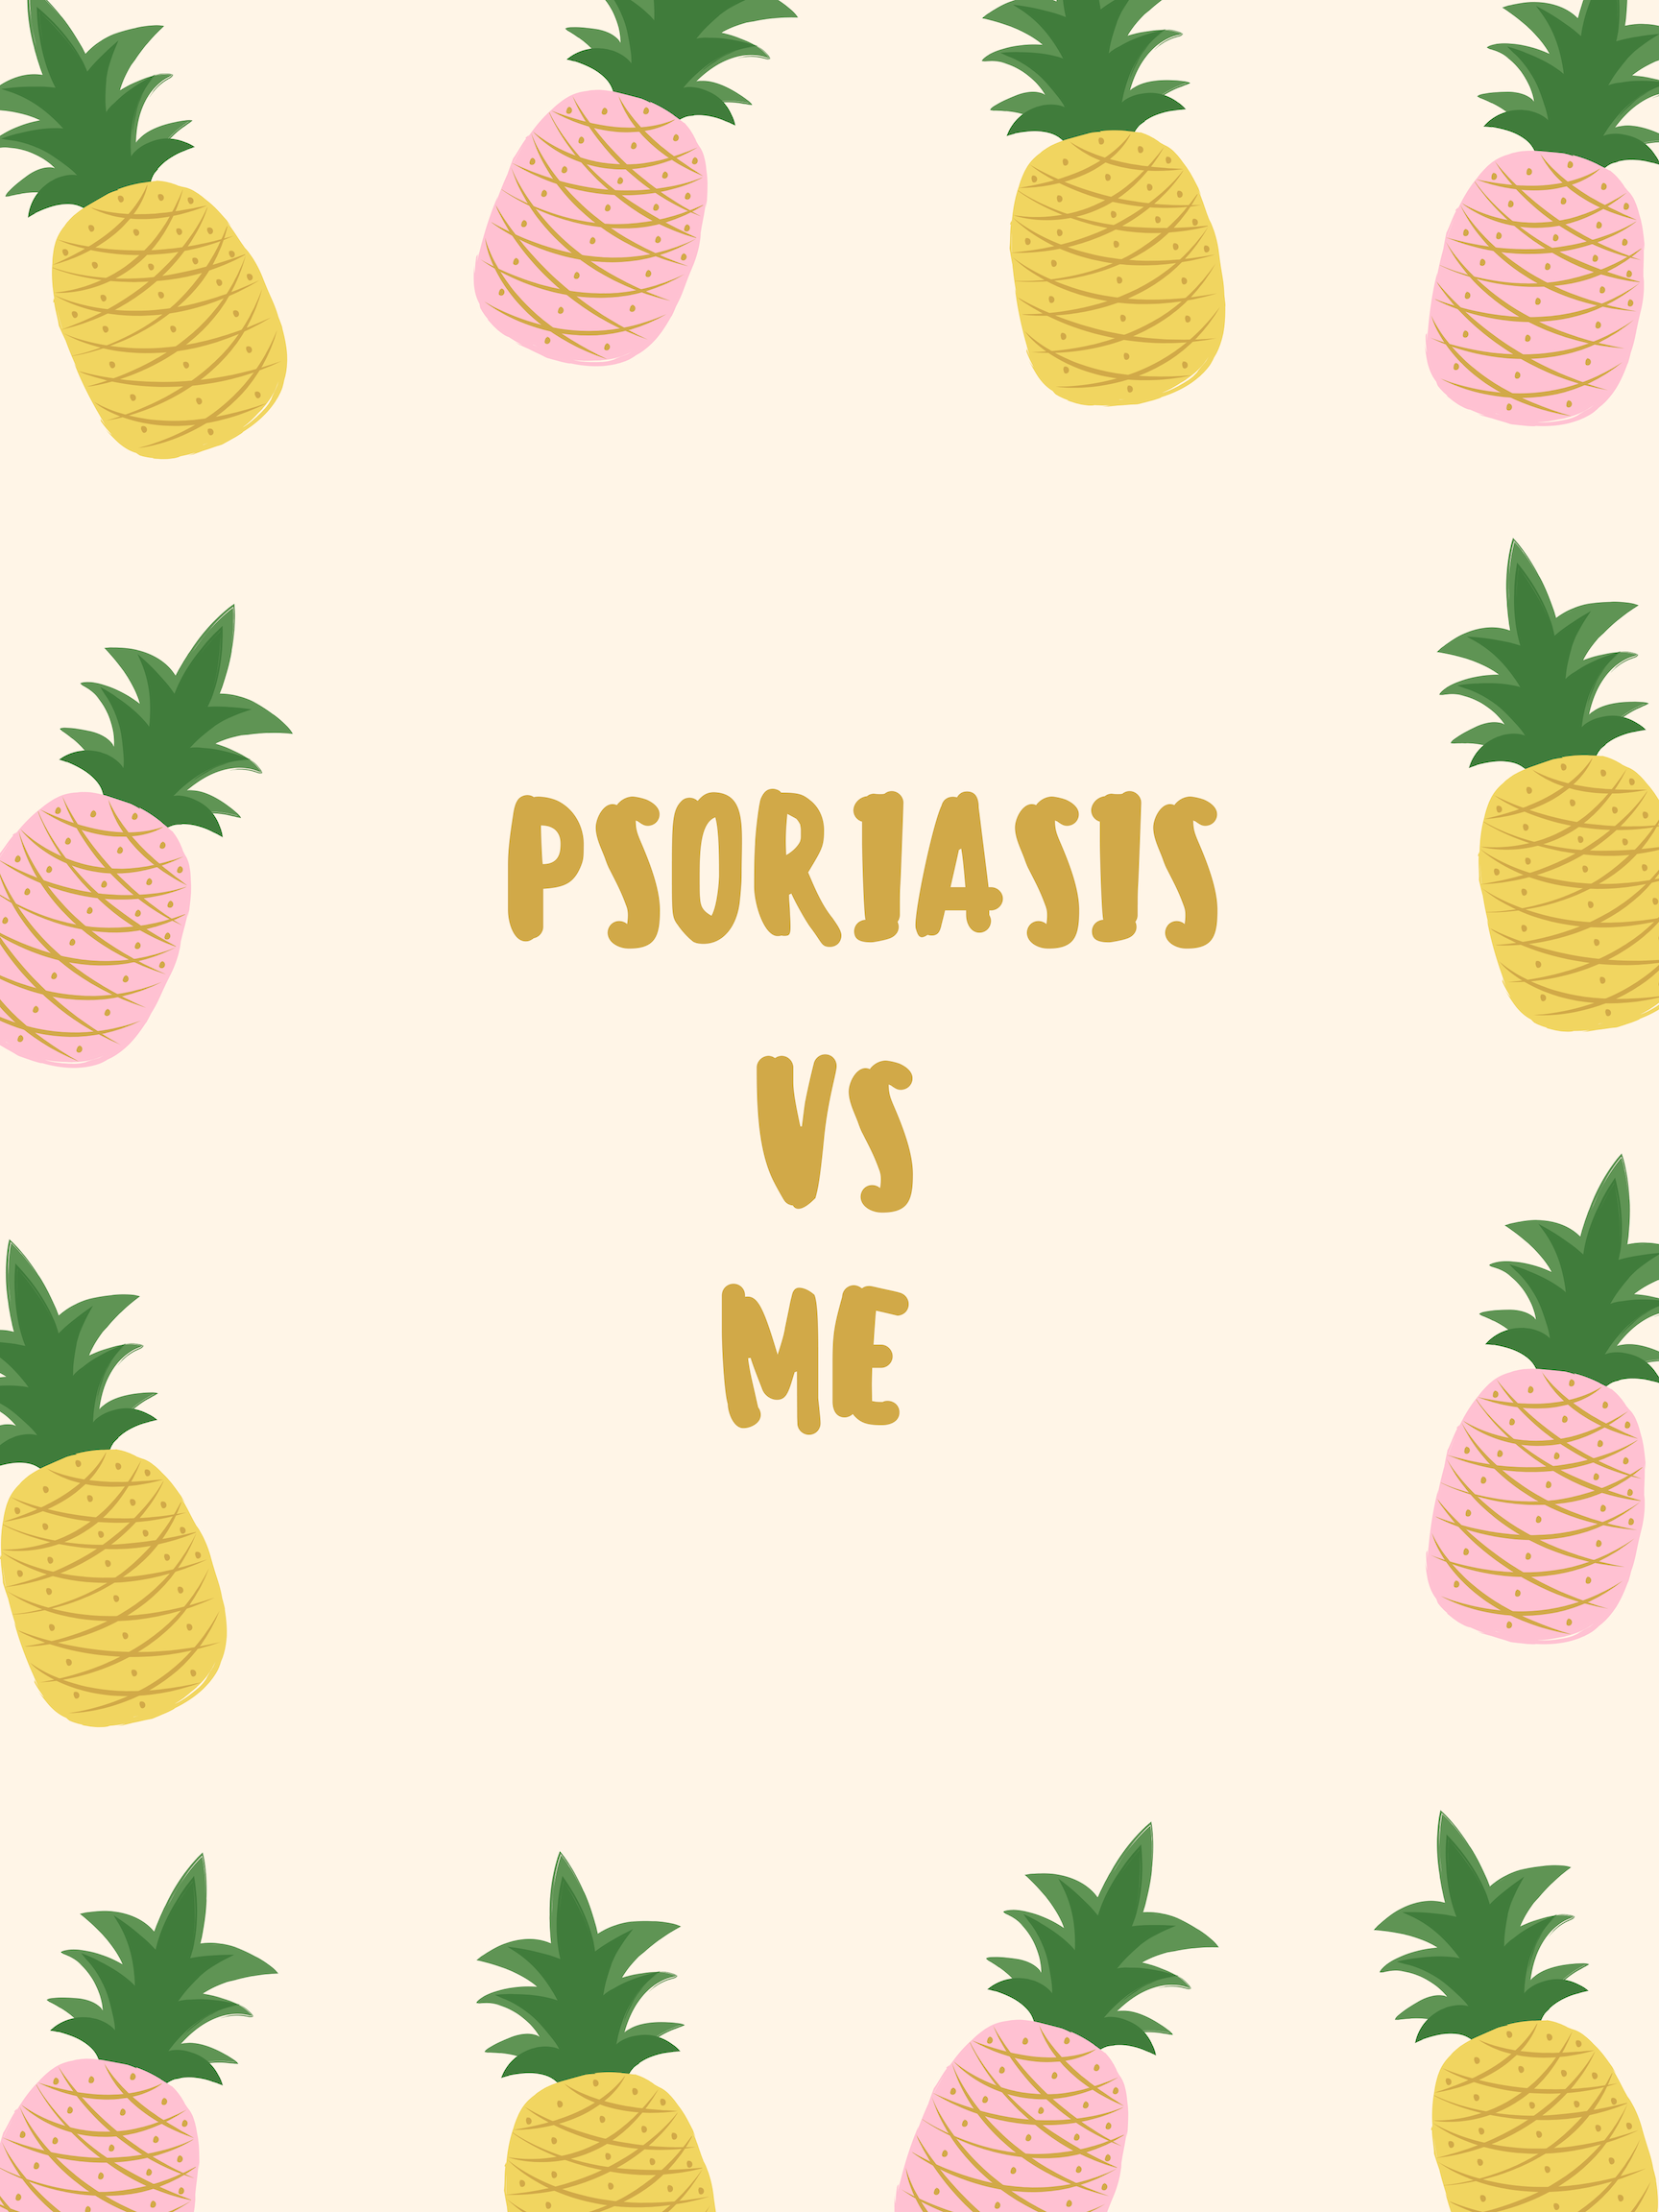 PSORIASIS VS ME